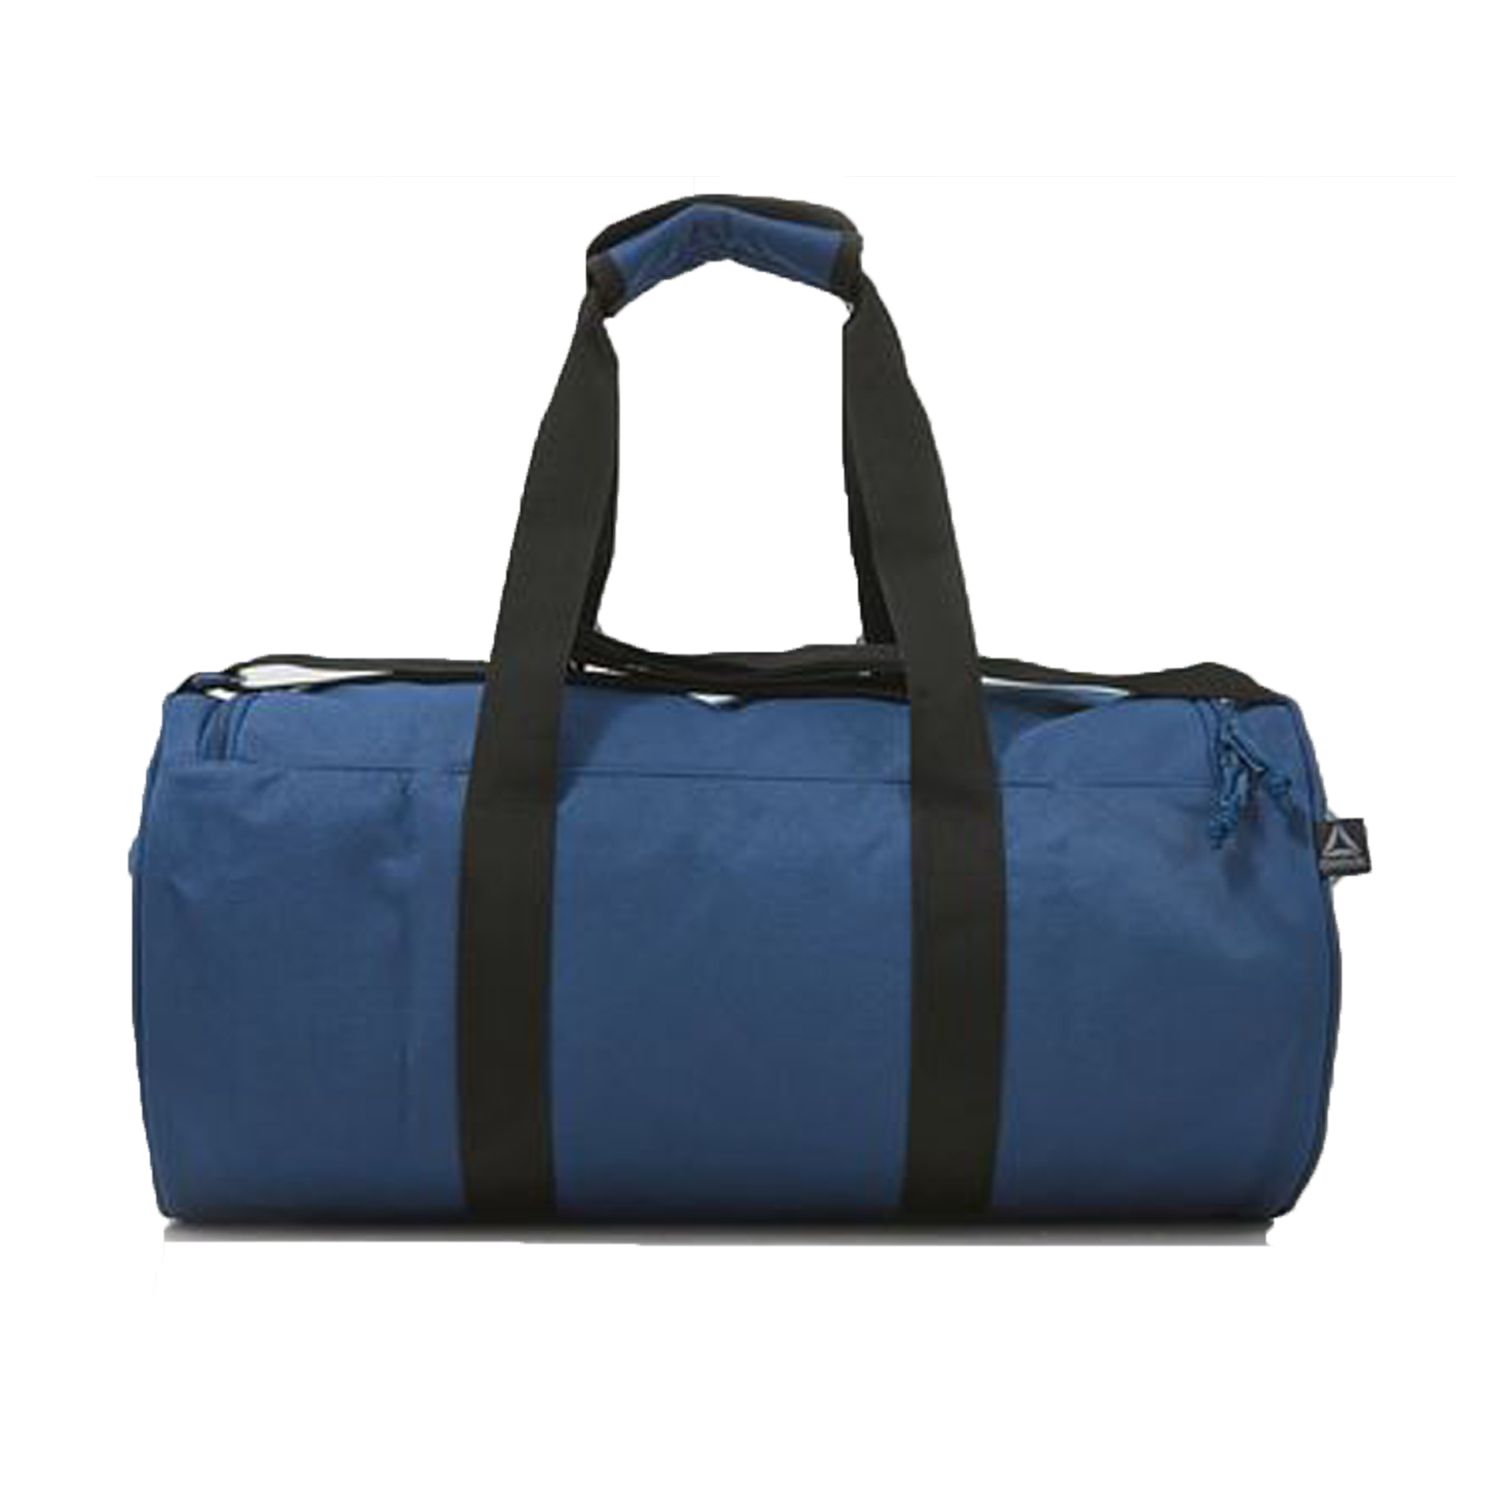 Reebok Blue Solid Duffle Bag - Buy Reebok Blue Solid Duffle Bag Online ...